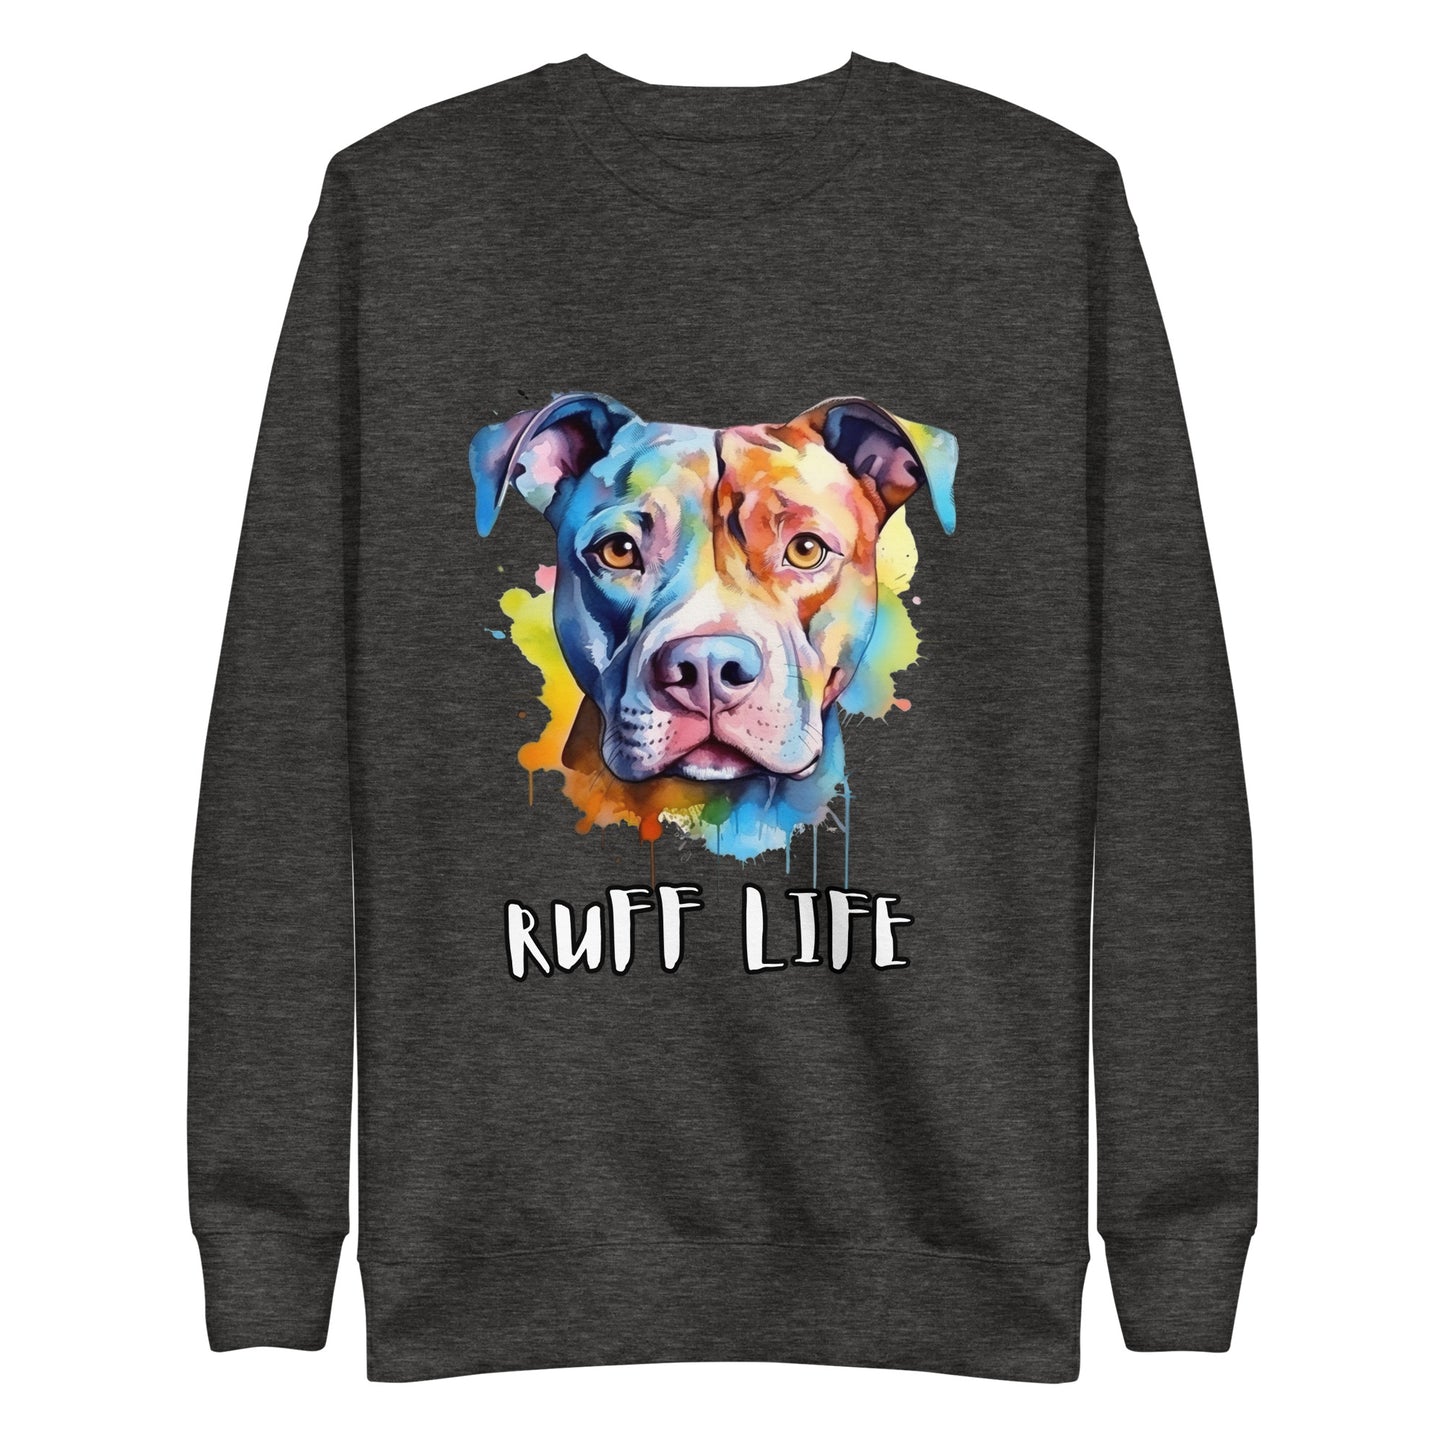 Ruff life Unisex Premium Sweatshirt